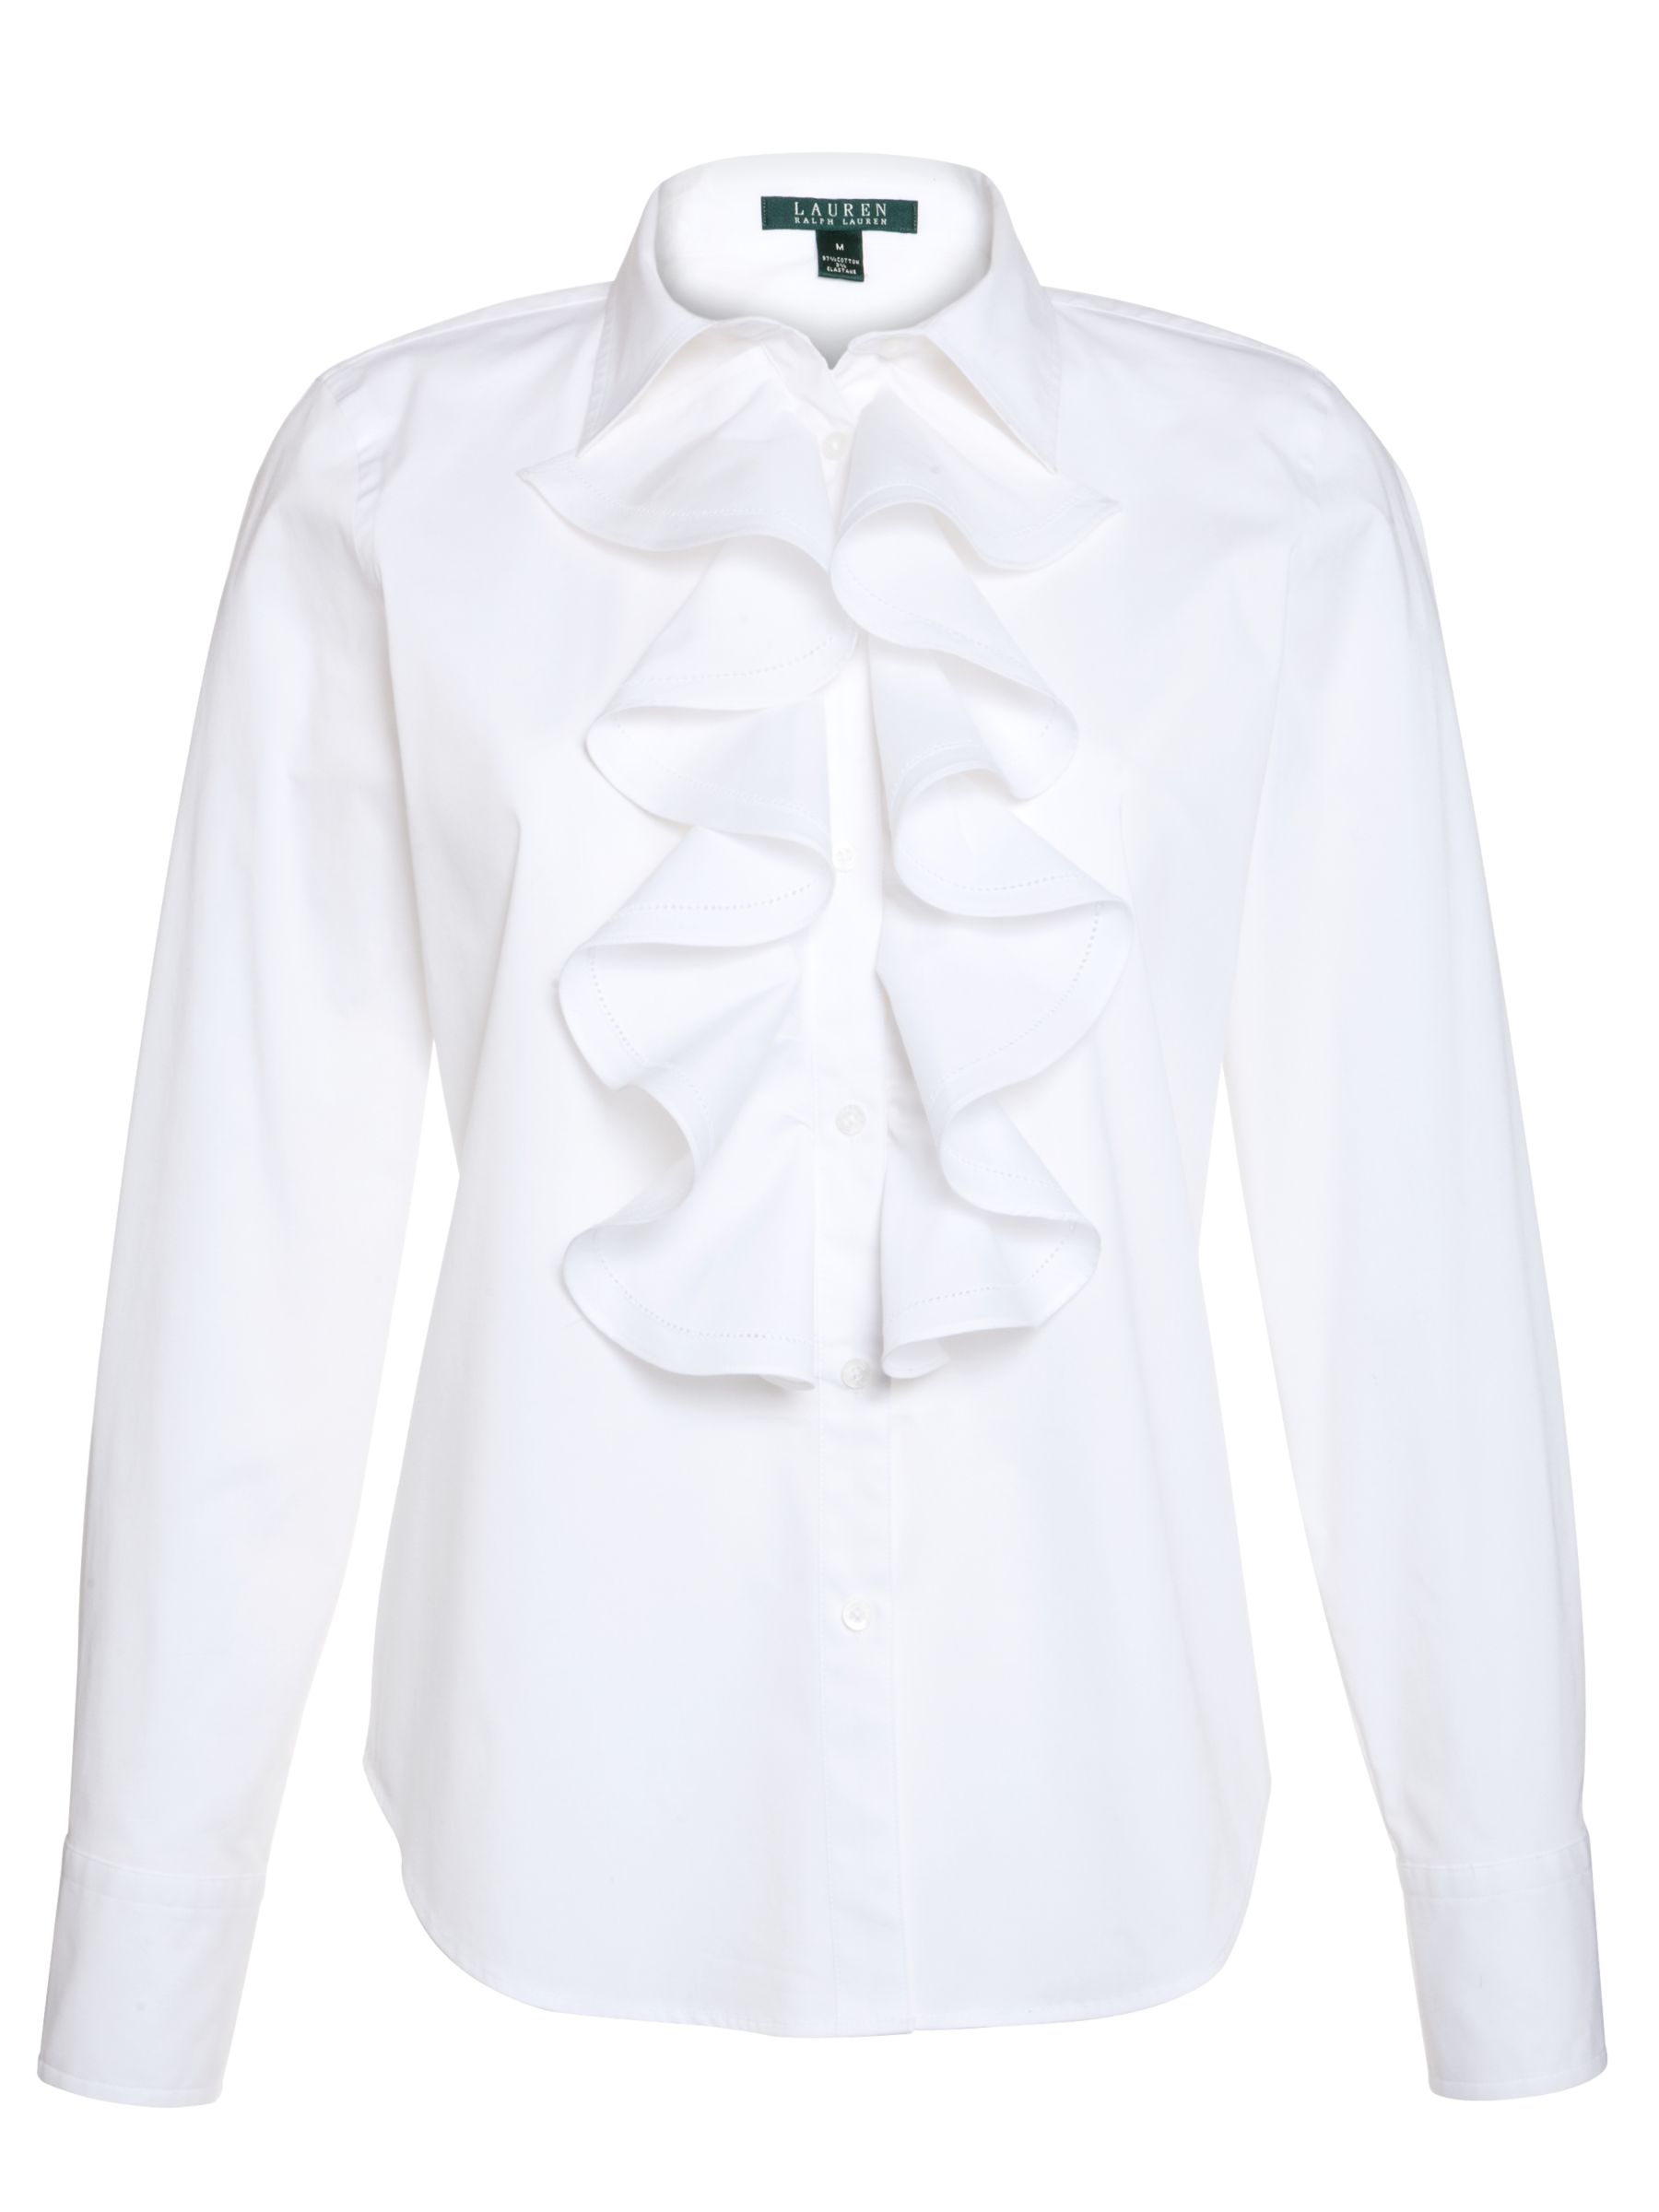 ralph lauren women's white blouse